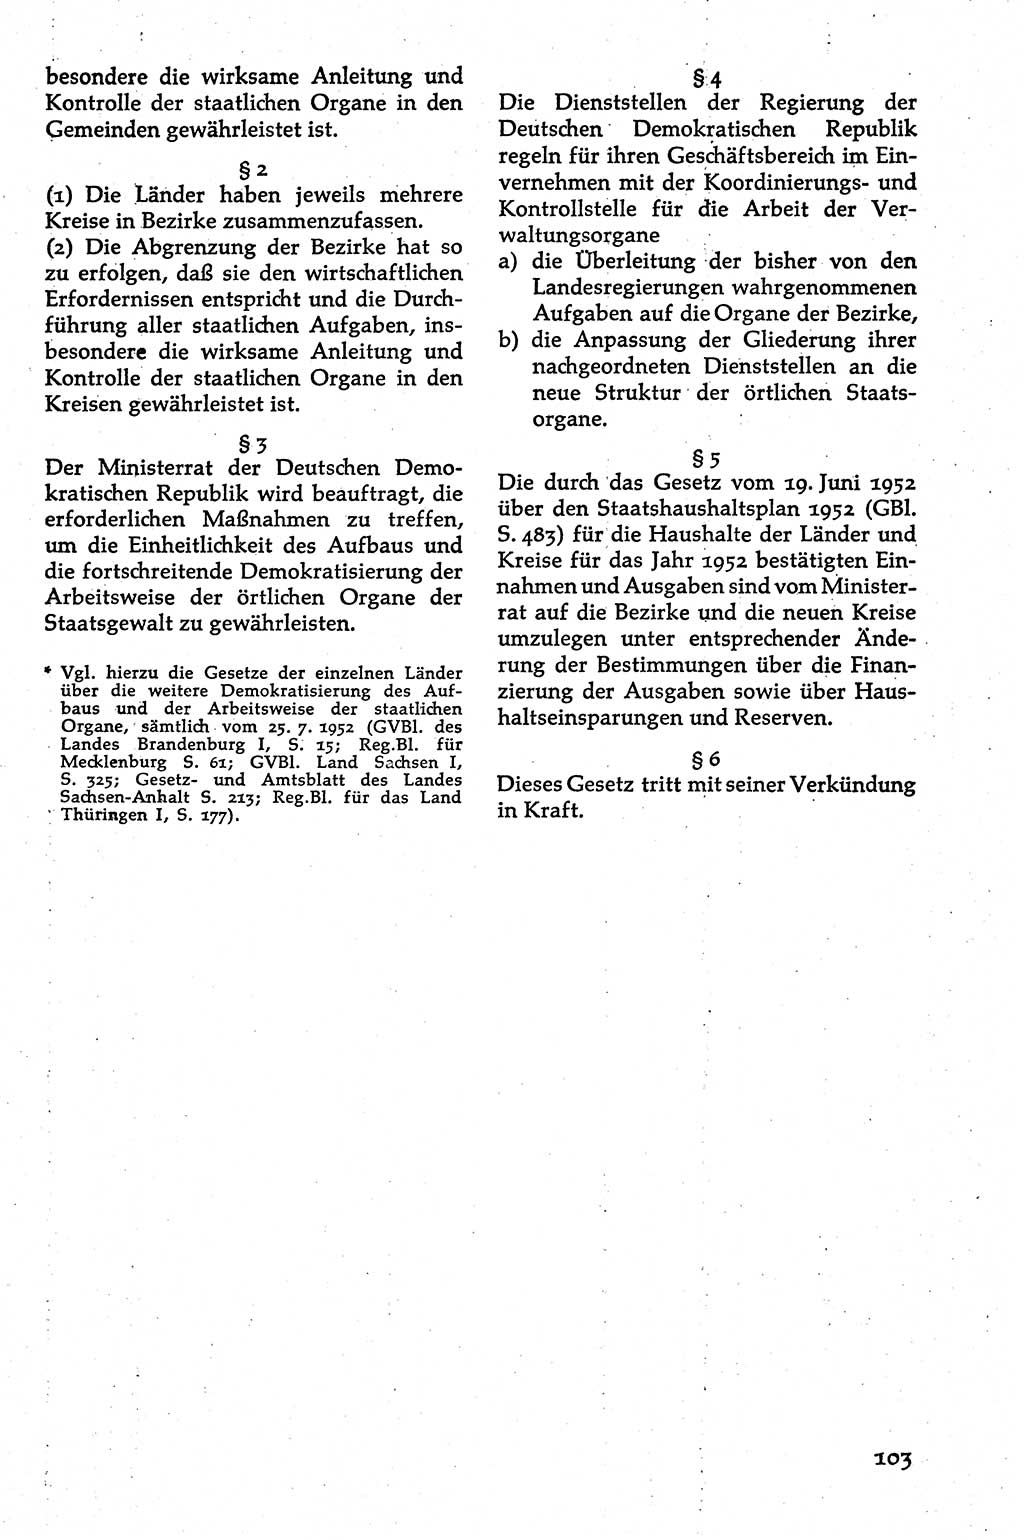 Volksdemokratische Ordnung in Mitteldeutschland [Deutsche Demokratische Republik (DDR)], Texte zur verfassungsrechtlichen Situation 1963, Seite 103 (Volksdem. Ordn. Md. DDR 1963, S. 103)